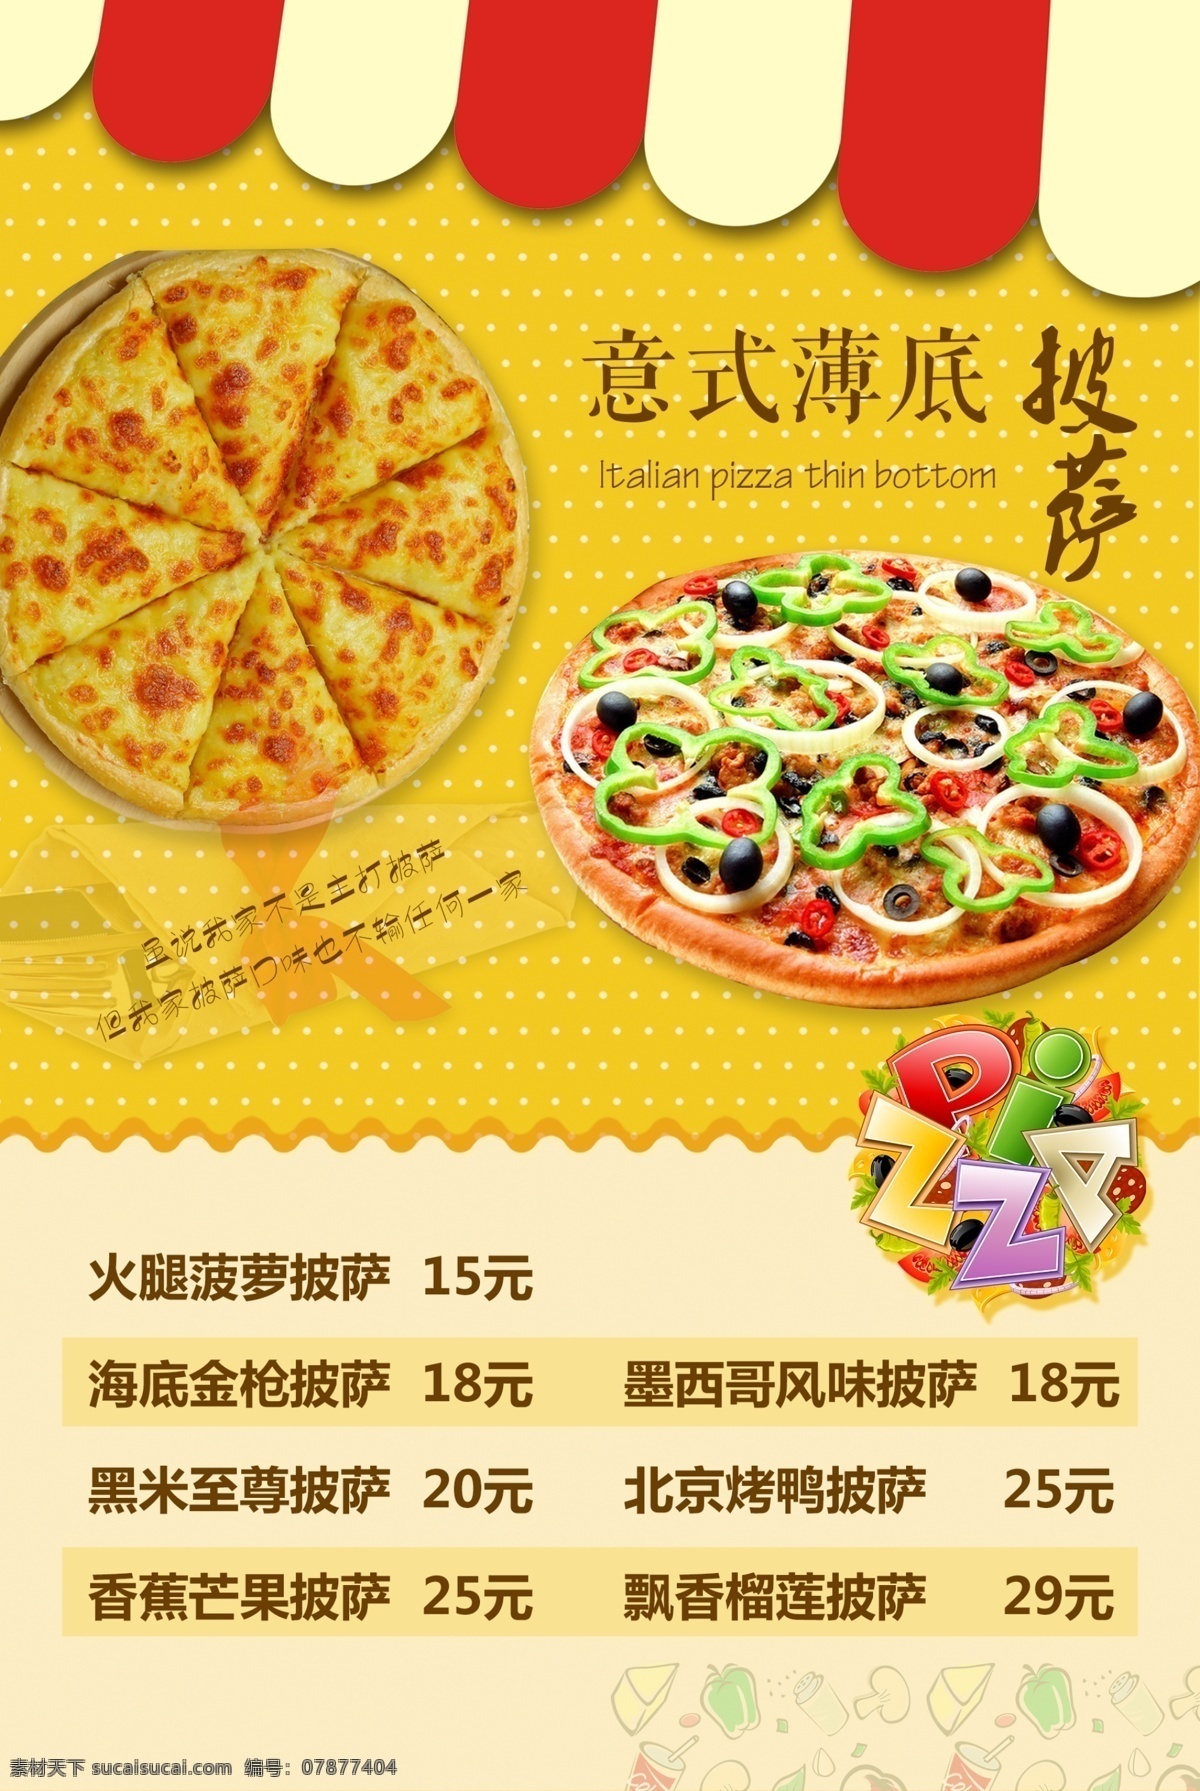 pizza 美食灯片 披萨美图 美食海报设计 psd素材